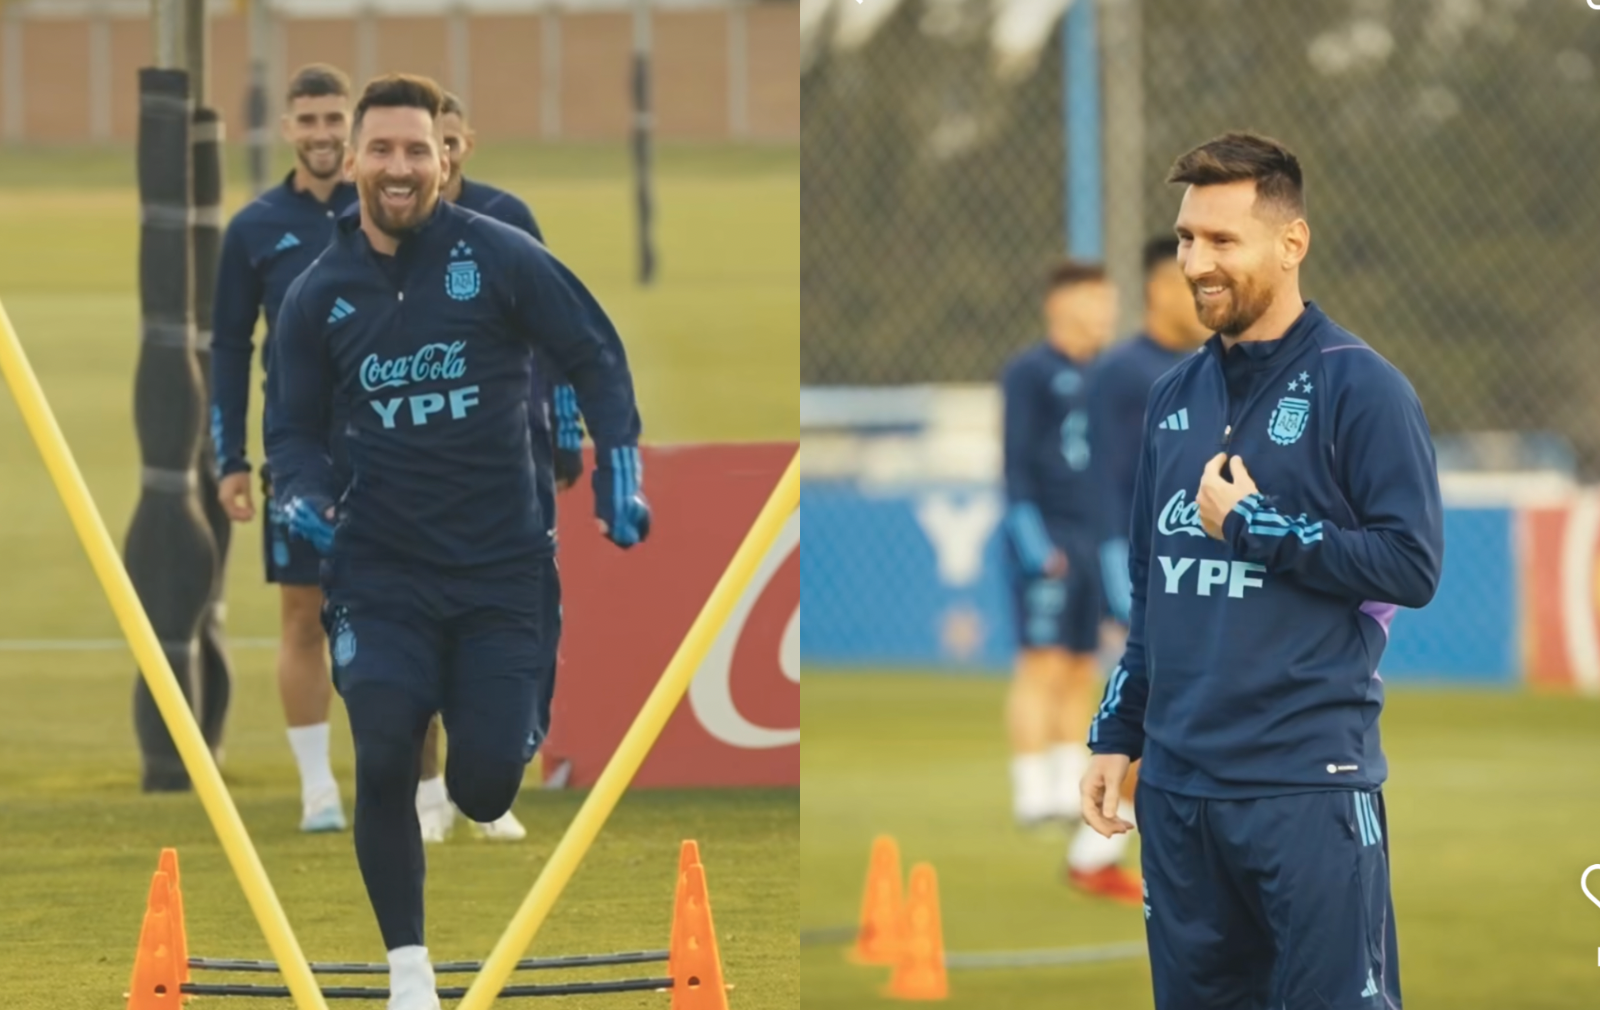 El jugado cambio de look de Lionel Messi en su regreso a la Selección Argentina para jugar las Eliminatorias